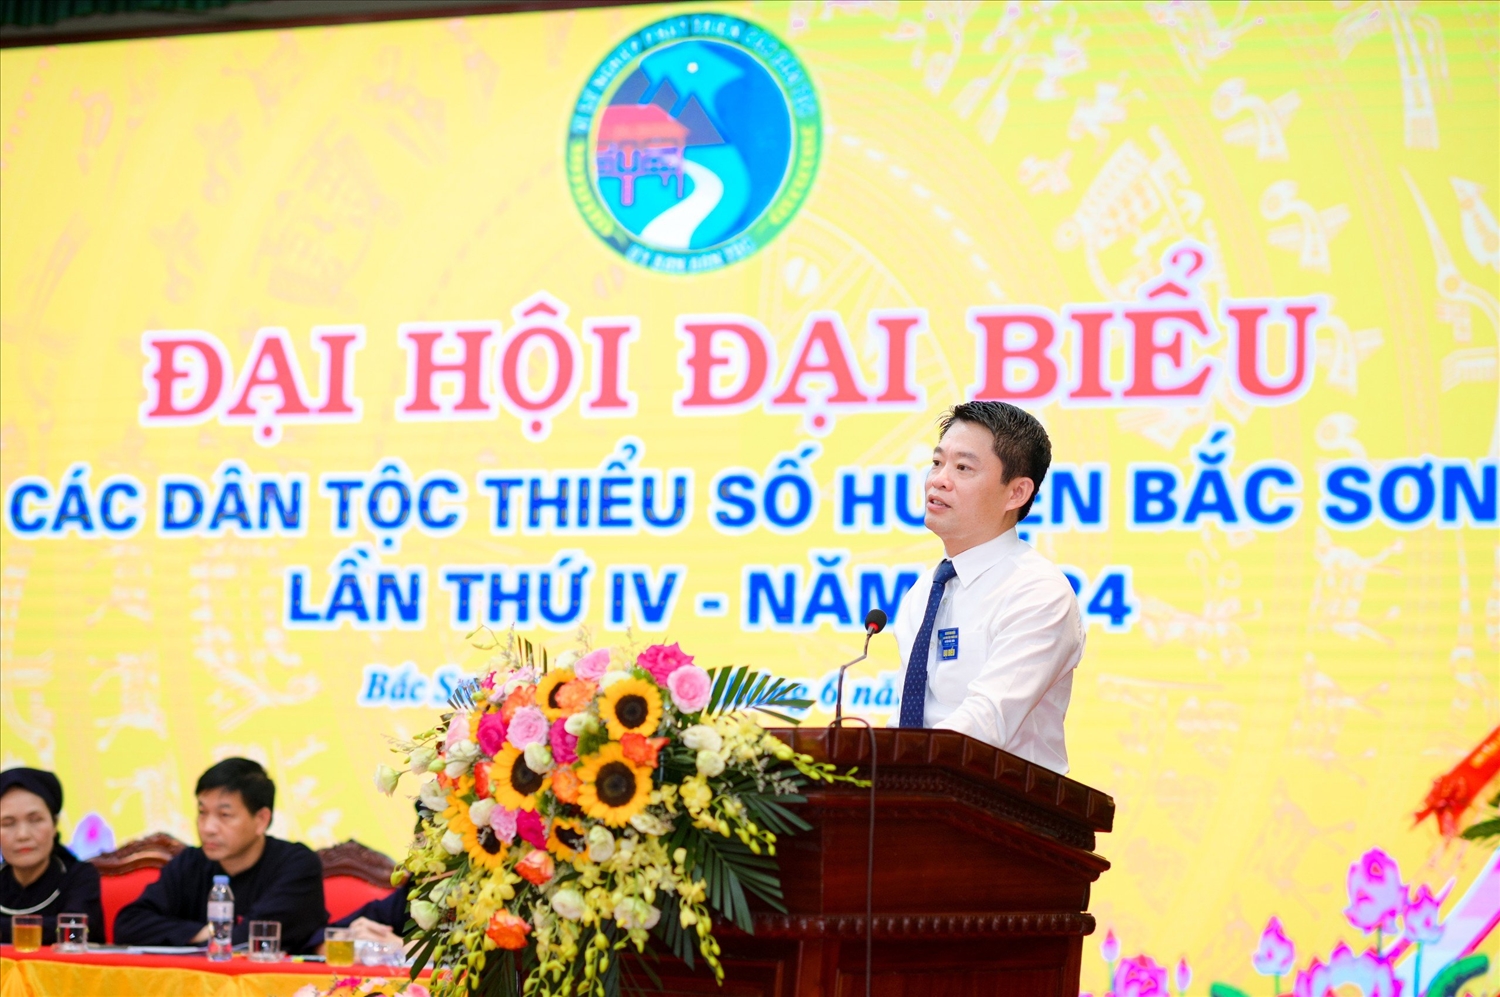 Ông Nguyễn Quang Huy, Bí thư Huyện uỷ Bắc Sơn phát biểu tại Đại hội